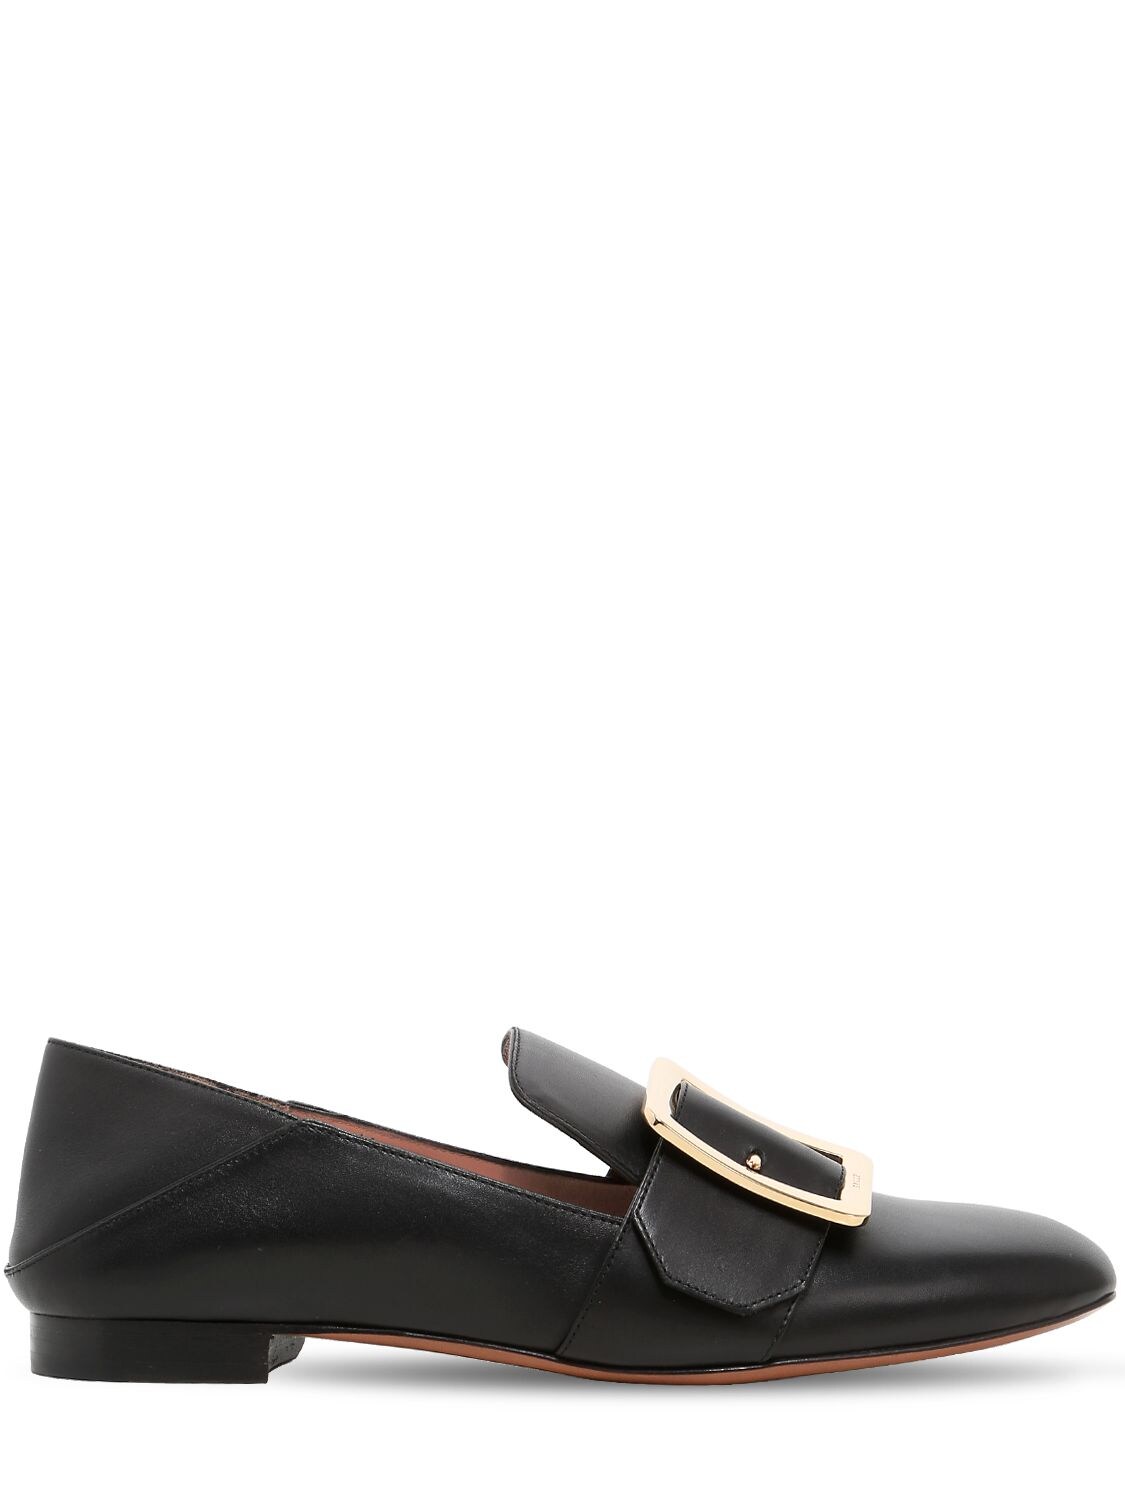 Bally Janelle Buckled Slip-on Loafers In Black | ModeSens